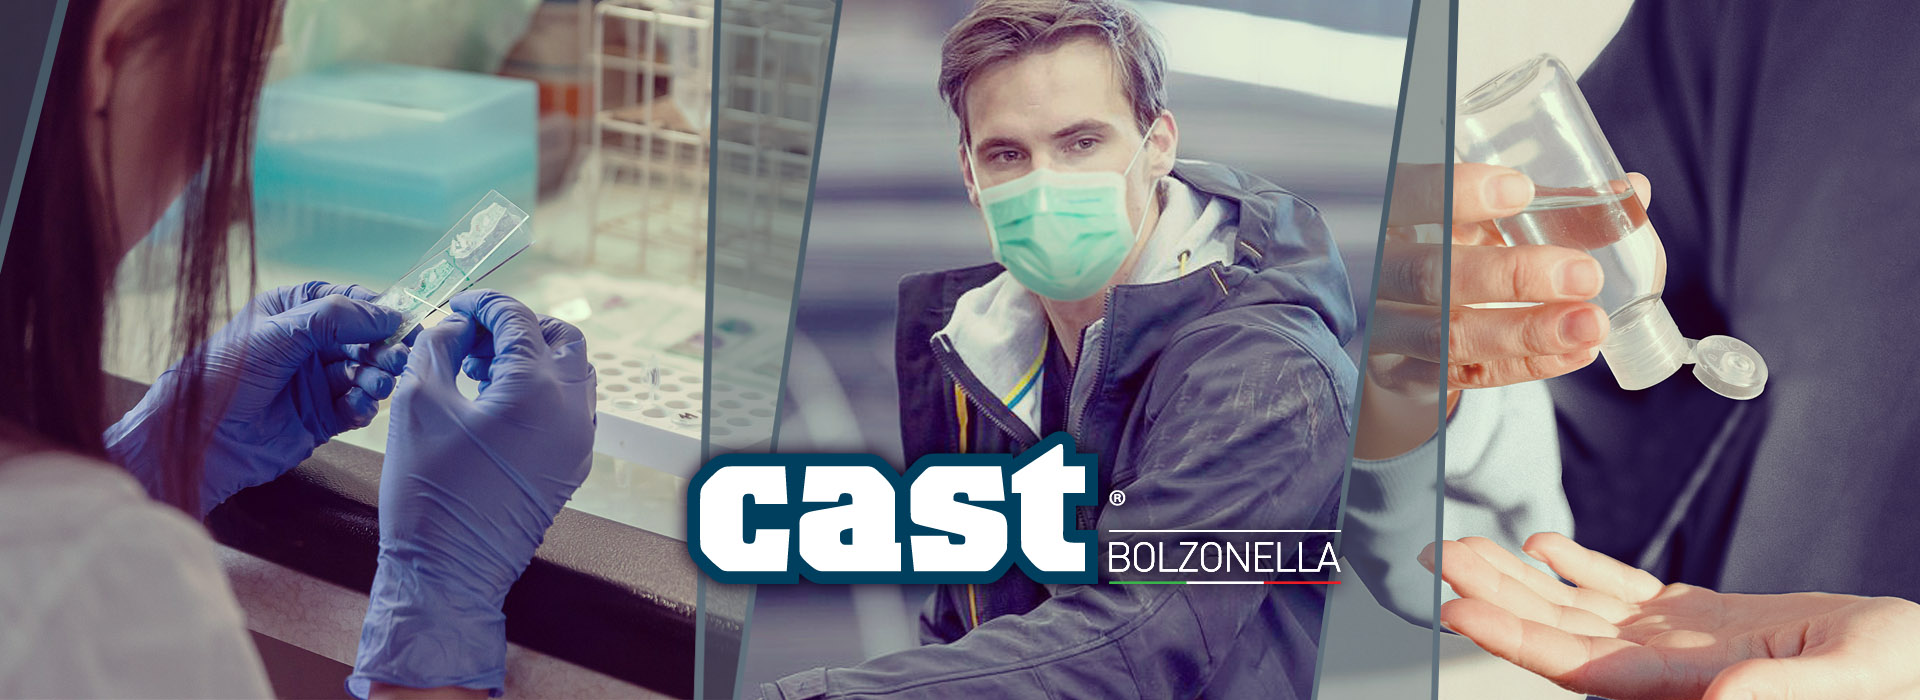 Regulation EN 14683 for Surgical masks | Cast Bolzonella